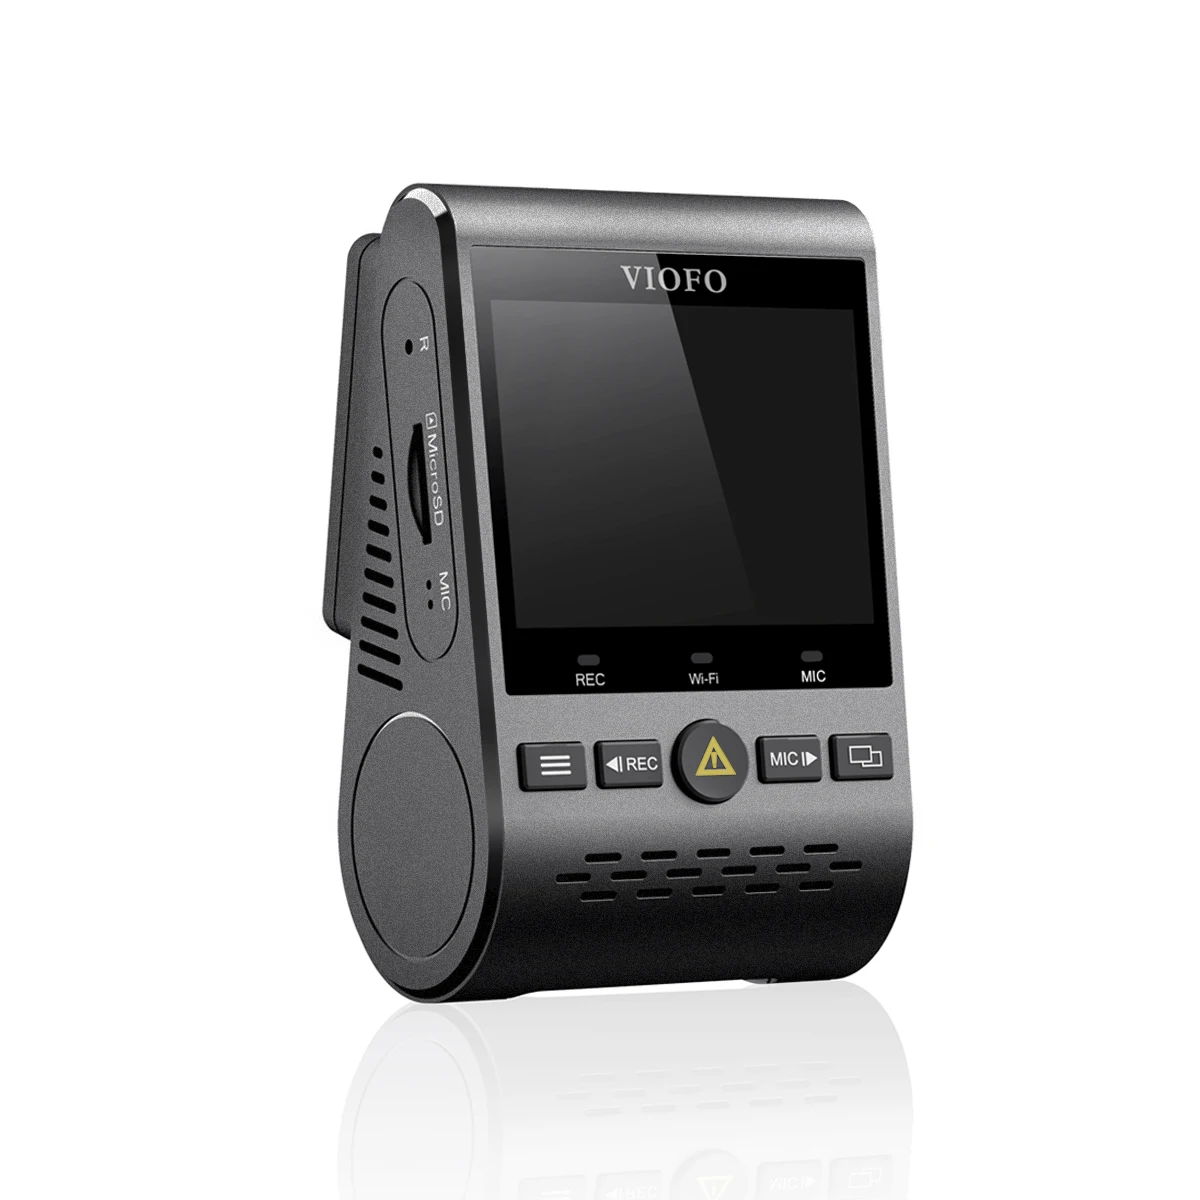 Viofo A129 фронтальная камера полоса 5 ГГц Wi-Fi Full HD Автомобильный видеорегистратор 1080P 30fps IMX291 Starvis сенсор с gps